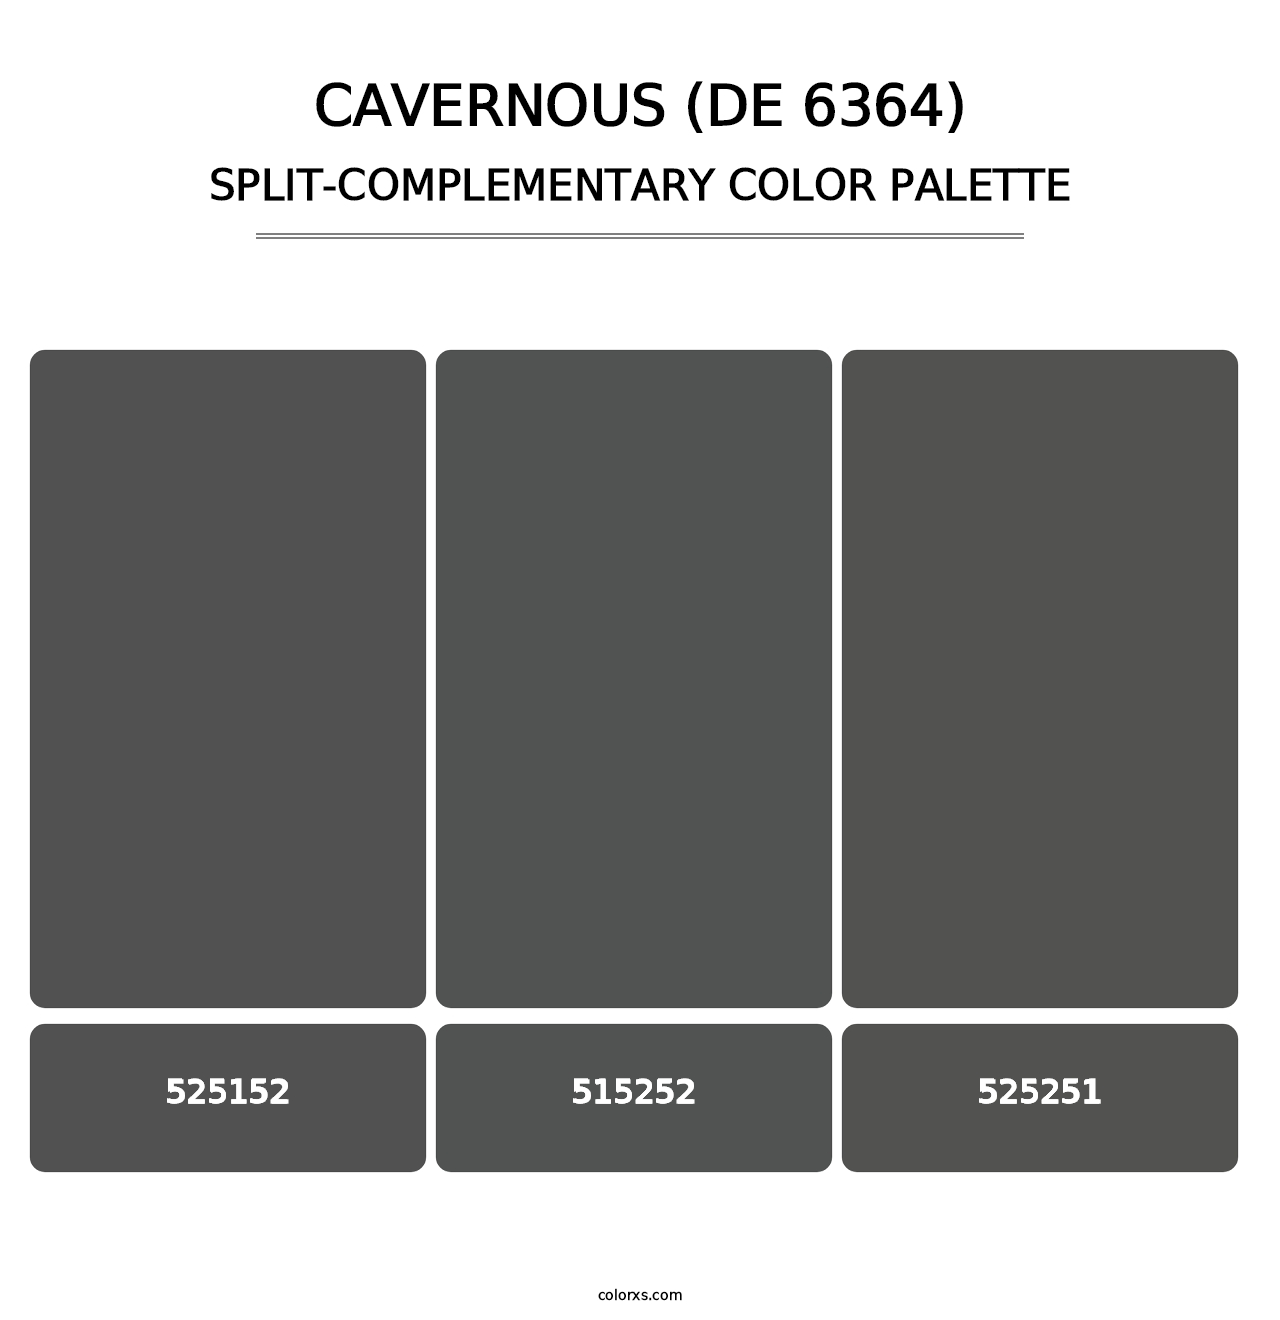 Cavernous (DE 6364) - Split-Complementary Color Palette